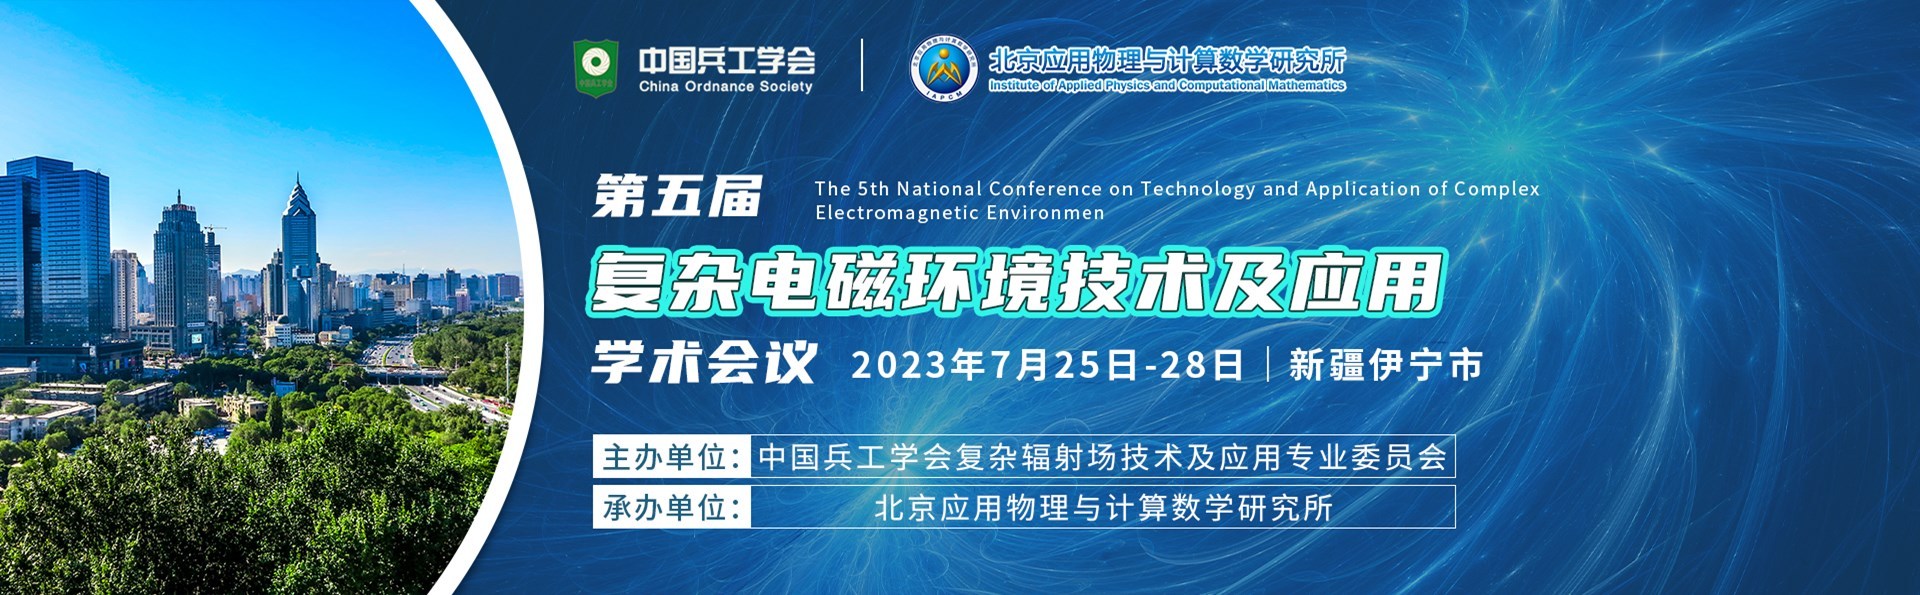 第五届全国复杂电磁环境技术及应用学术会议